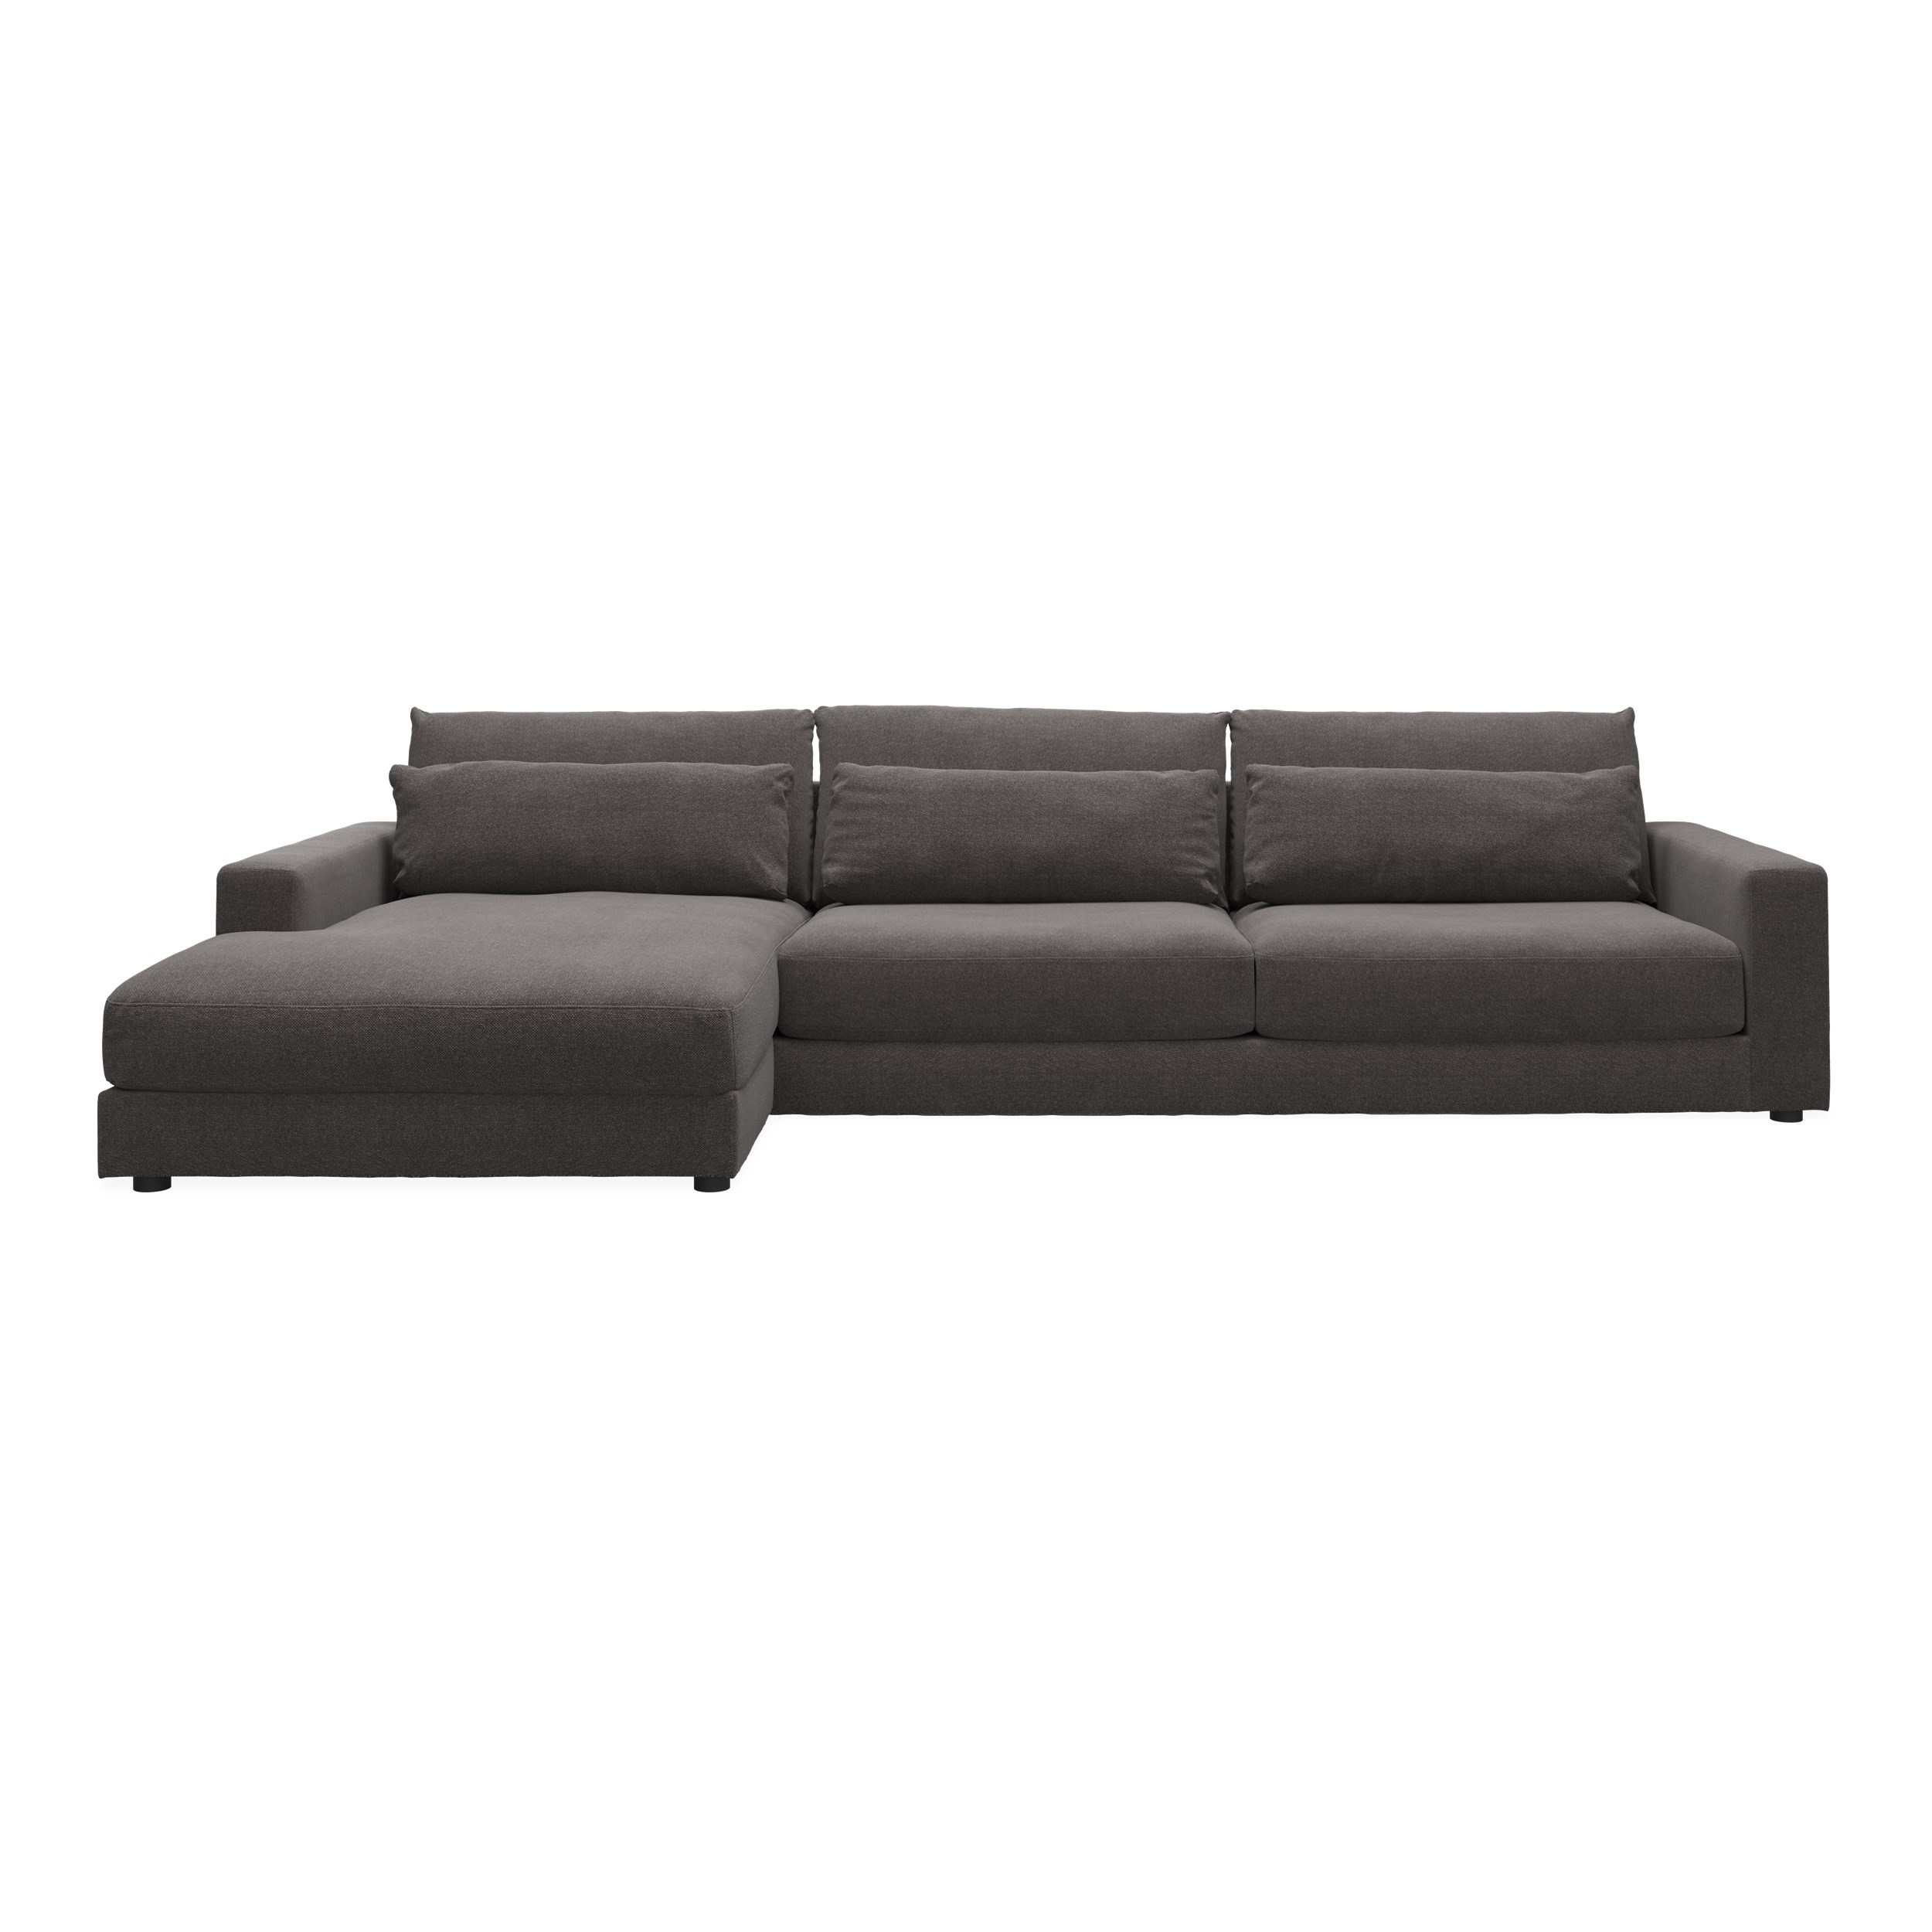 Halmstad vänstervänd soffa med schäslong - Rate 68 Dark grey textil och ben i svart plast